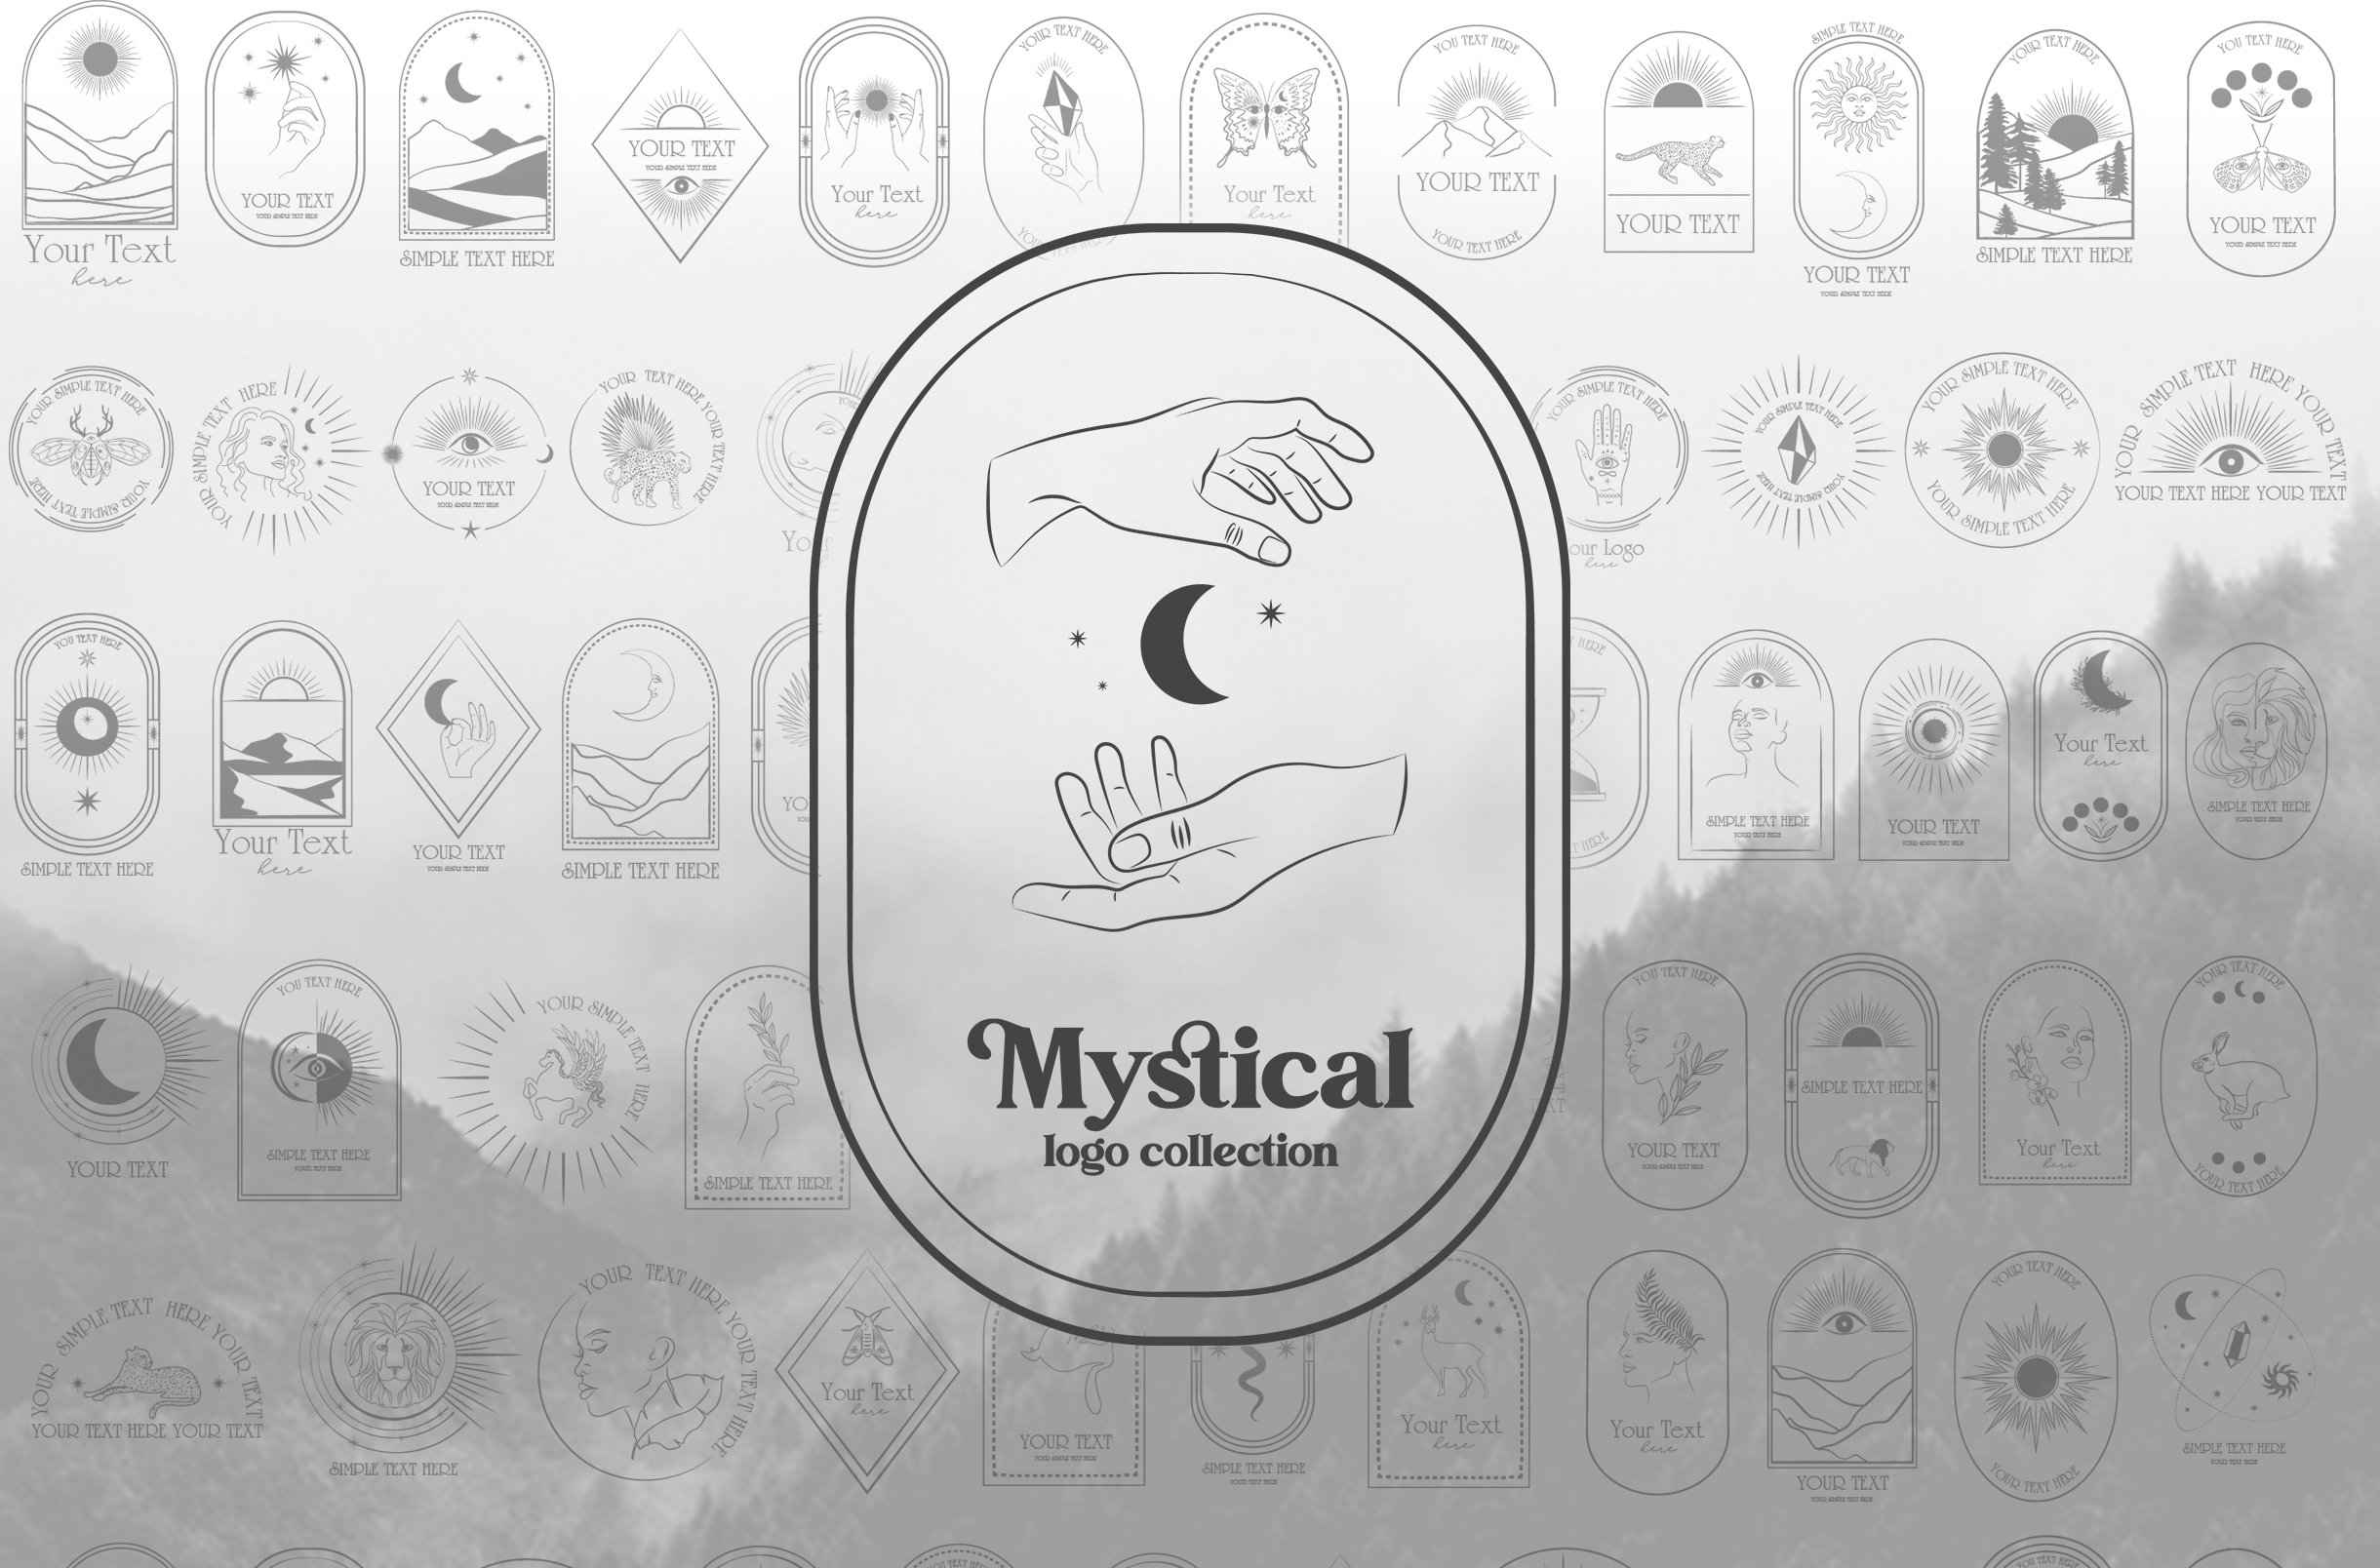 mystical logo02 655